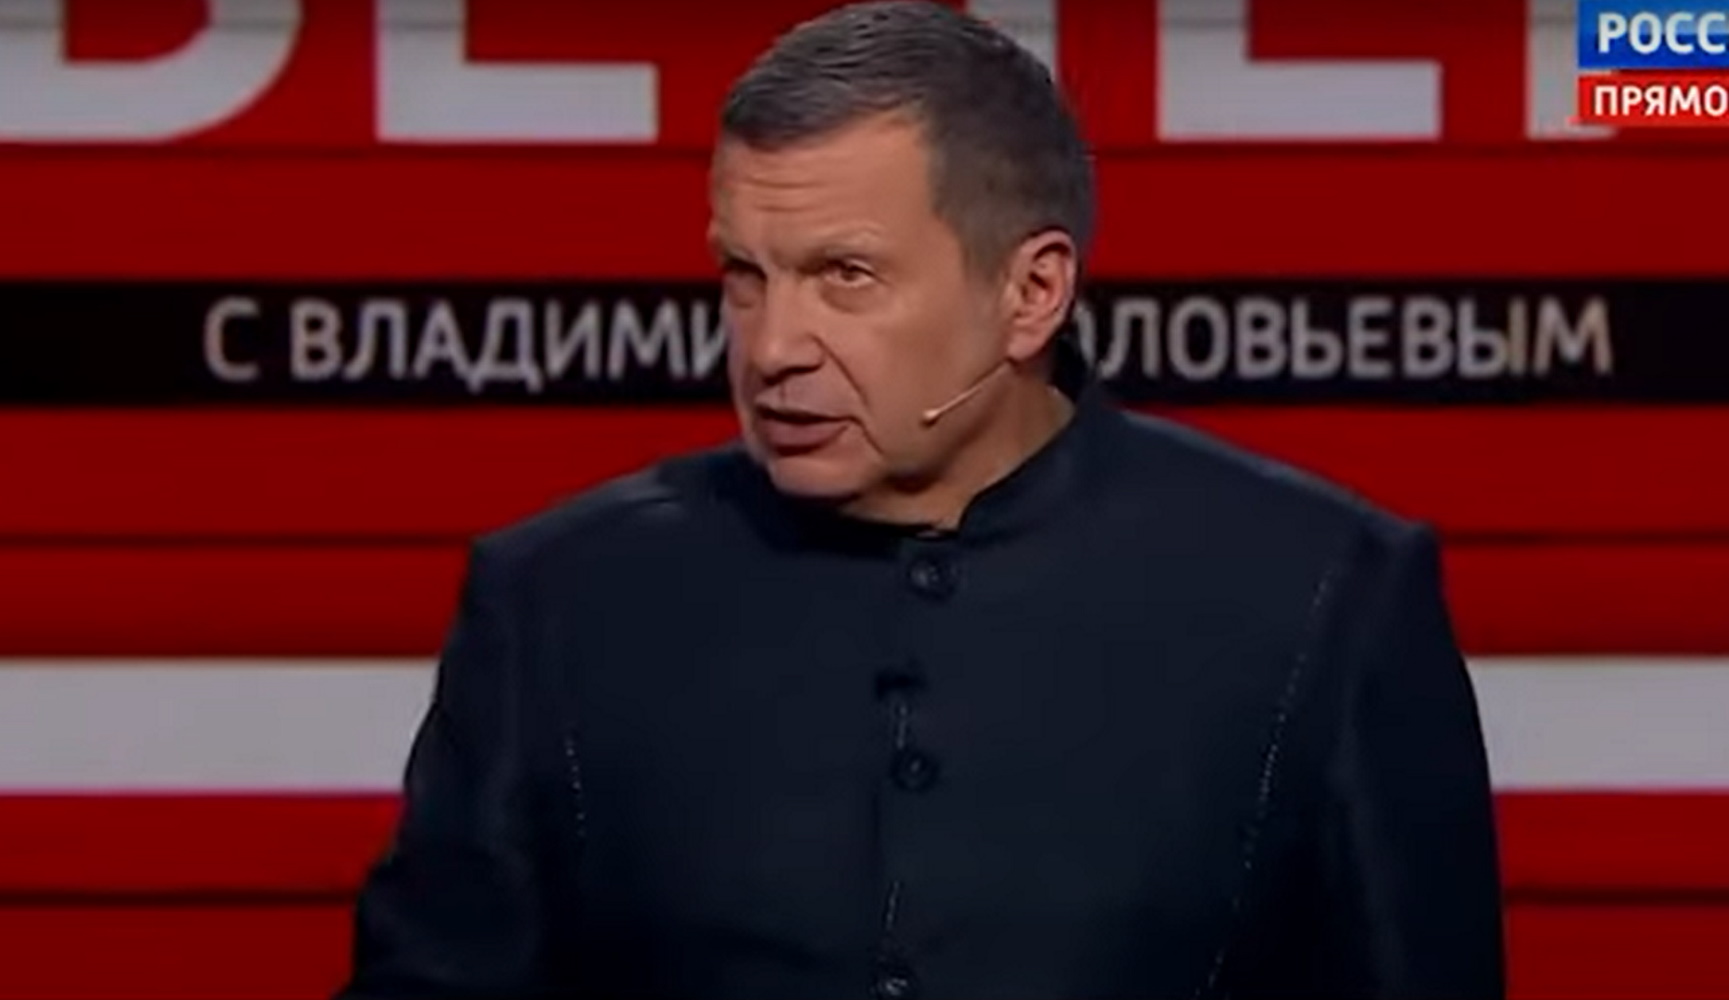 Ρωσία: Διάσημος τηλεπαρουσιαστής παρουσιαστής ήθελε να σκοτώσει «νονό» του υποκόσμου προσφέροντας 20.000 δολάρια